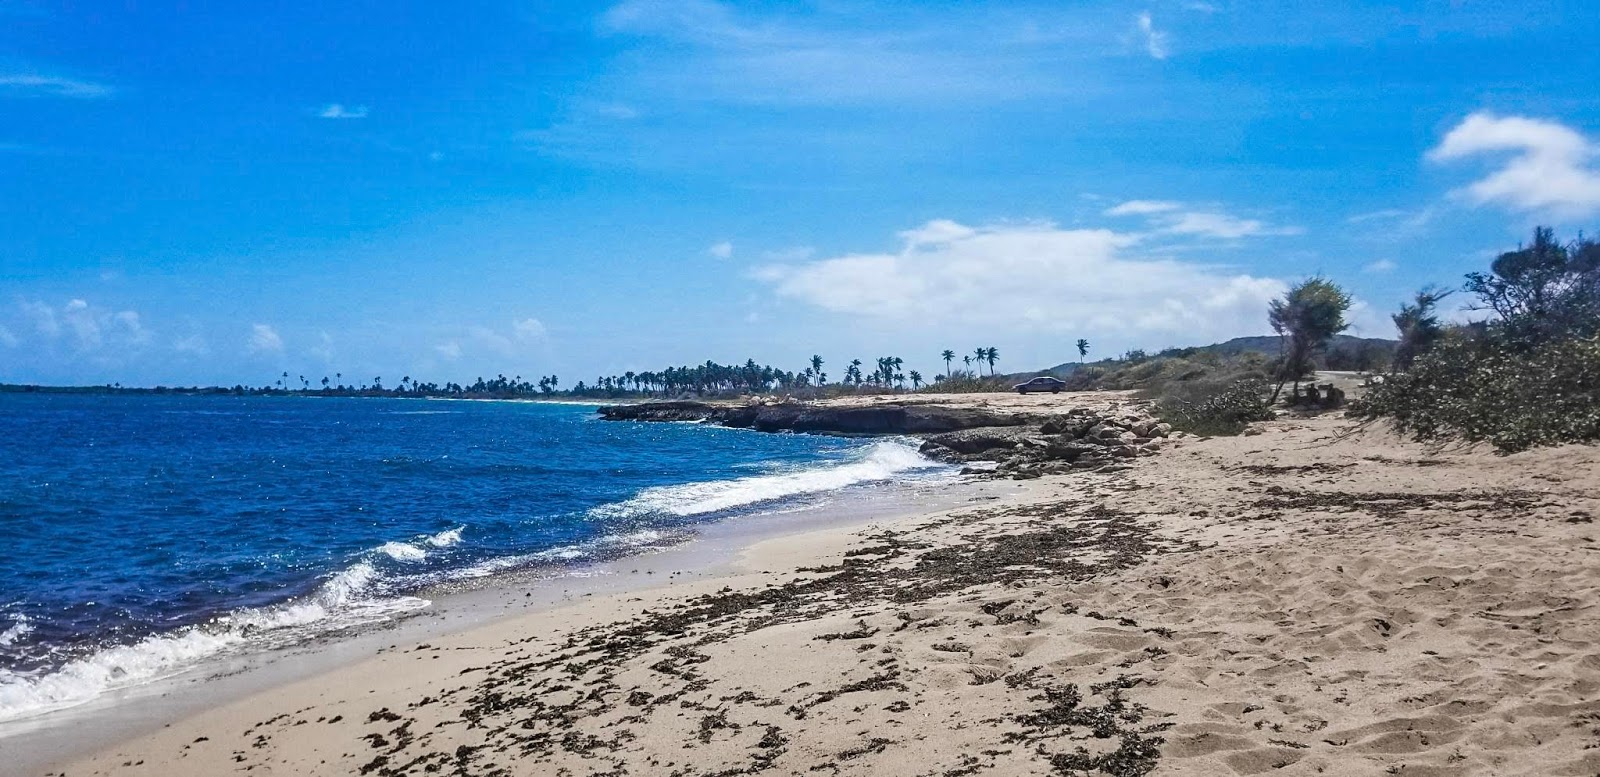 Playa Frontera'in fotoğrafı doğrudan plaj ile birlikte